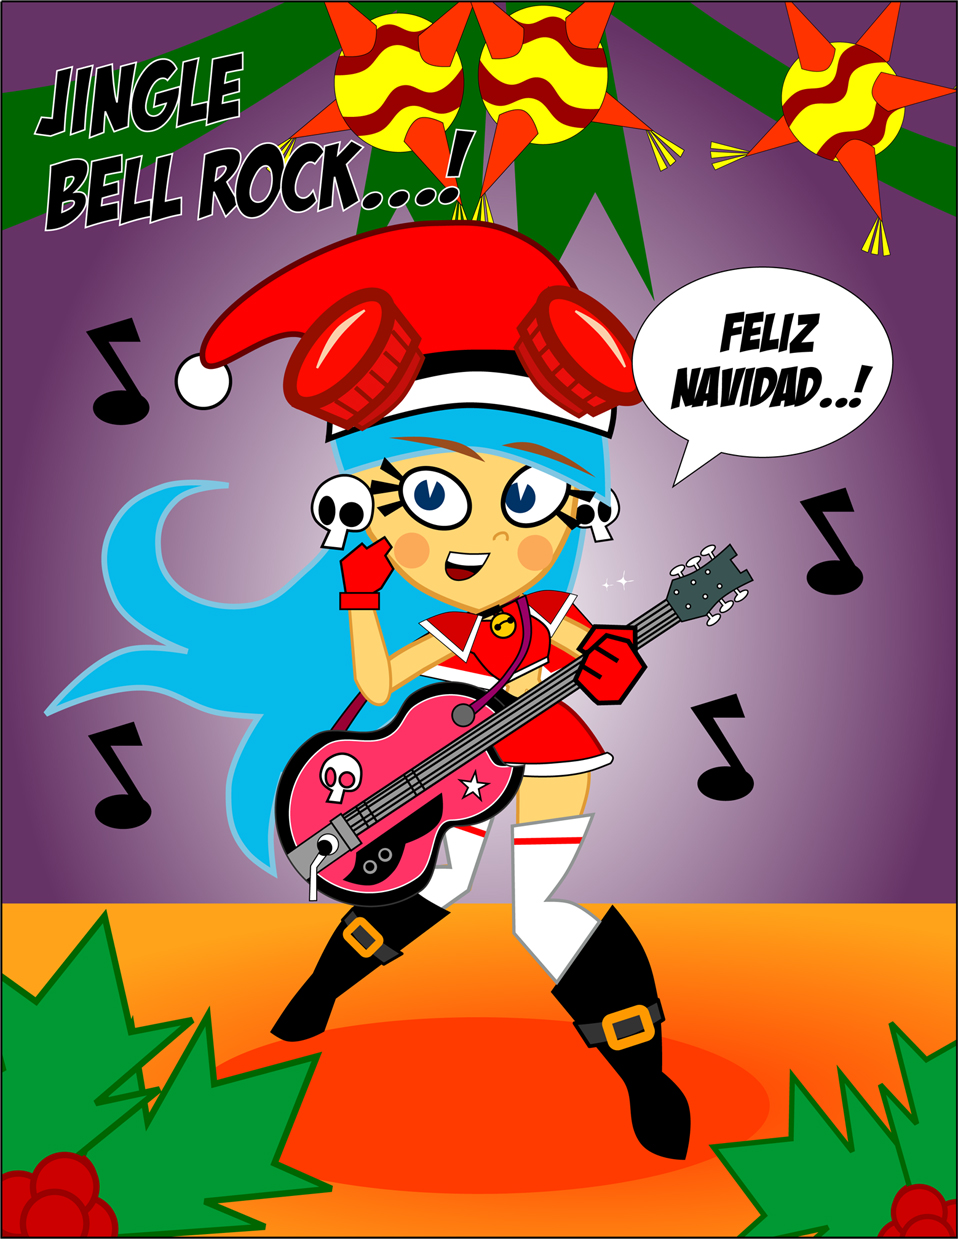 JINGLE BELL ROCK... by CrimsonFace on DeviantArt